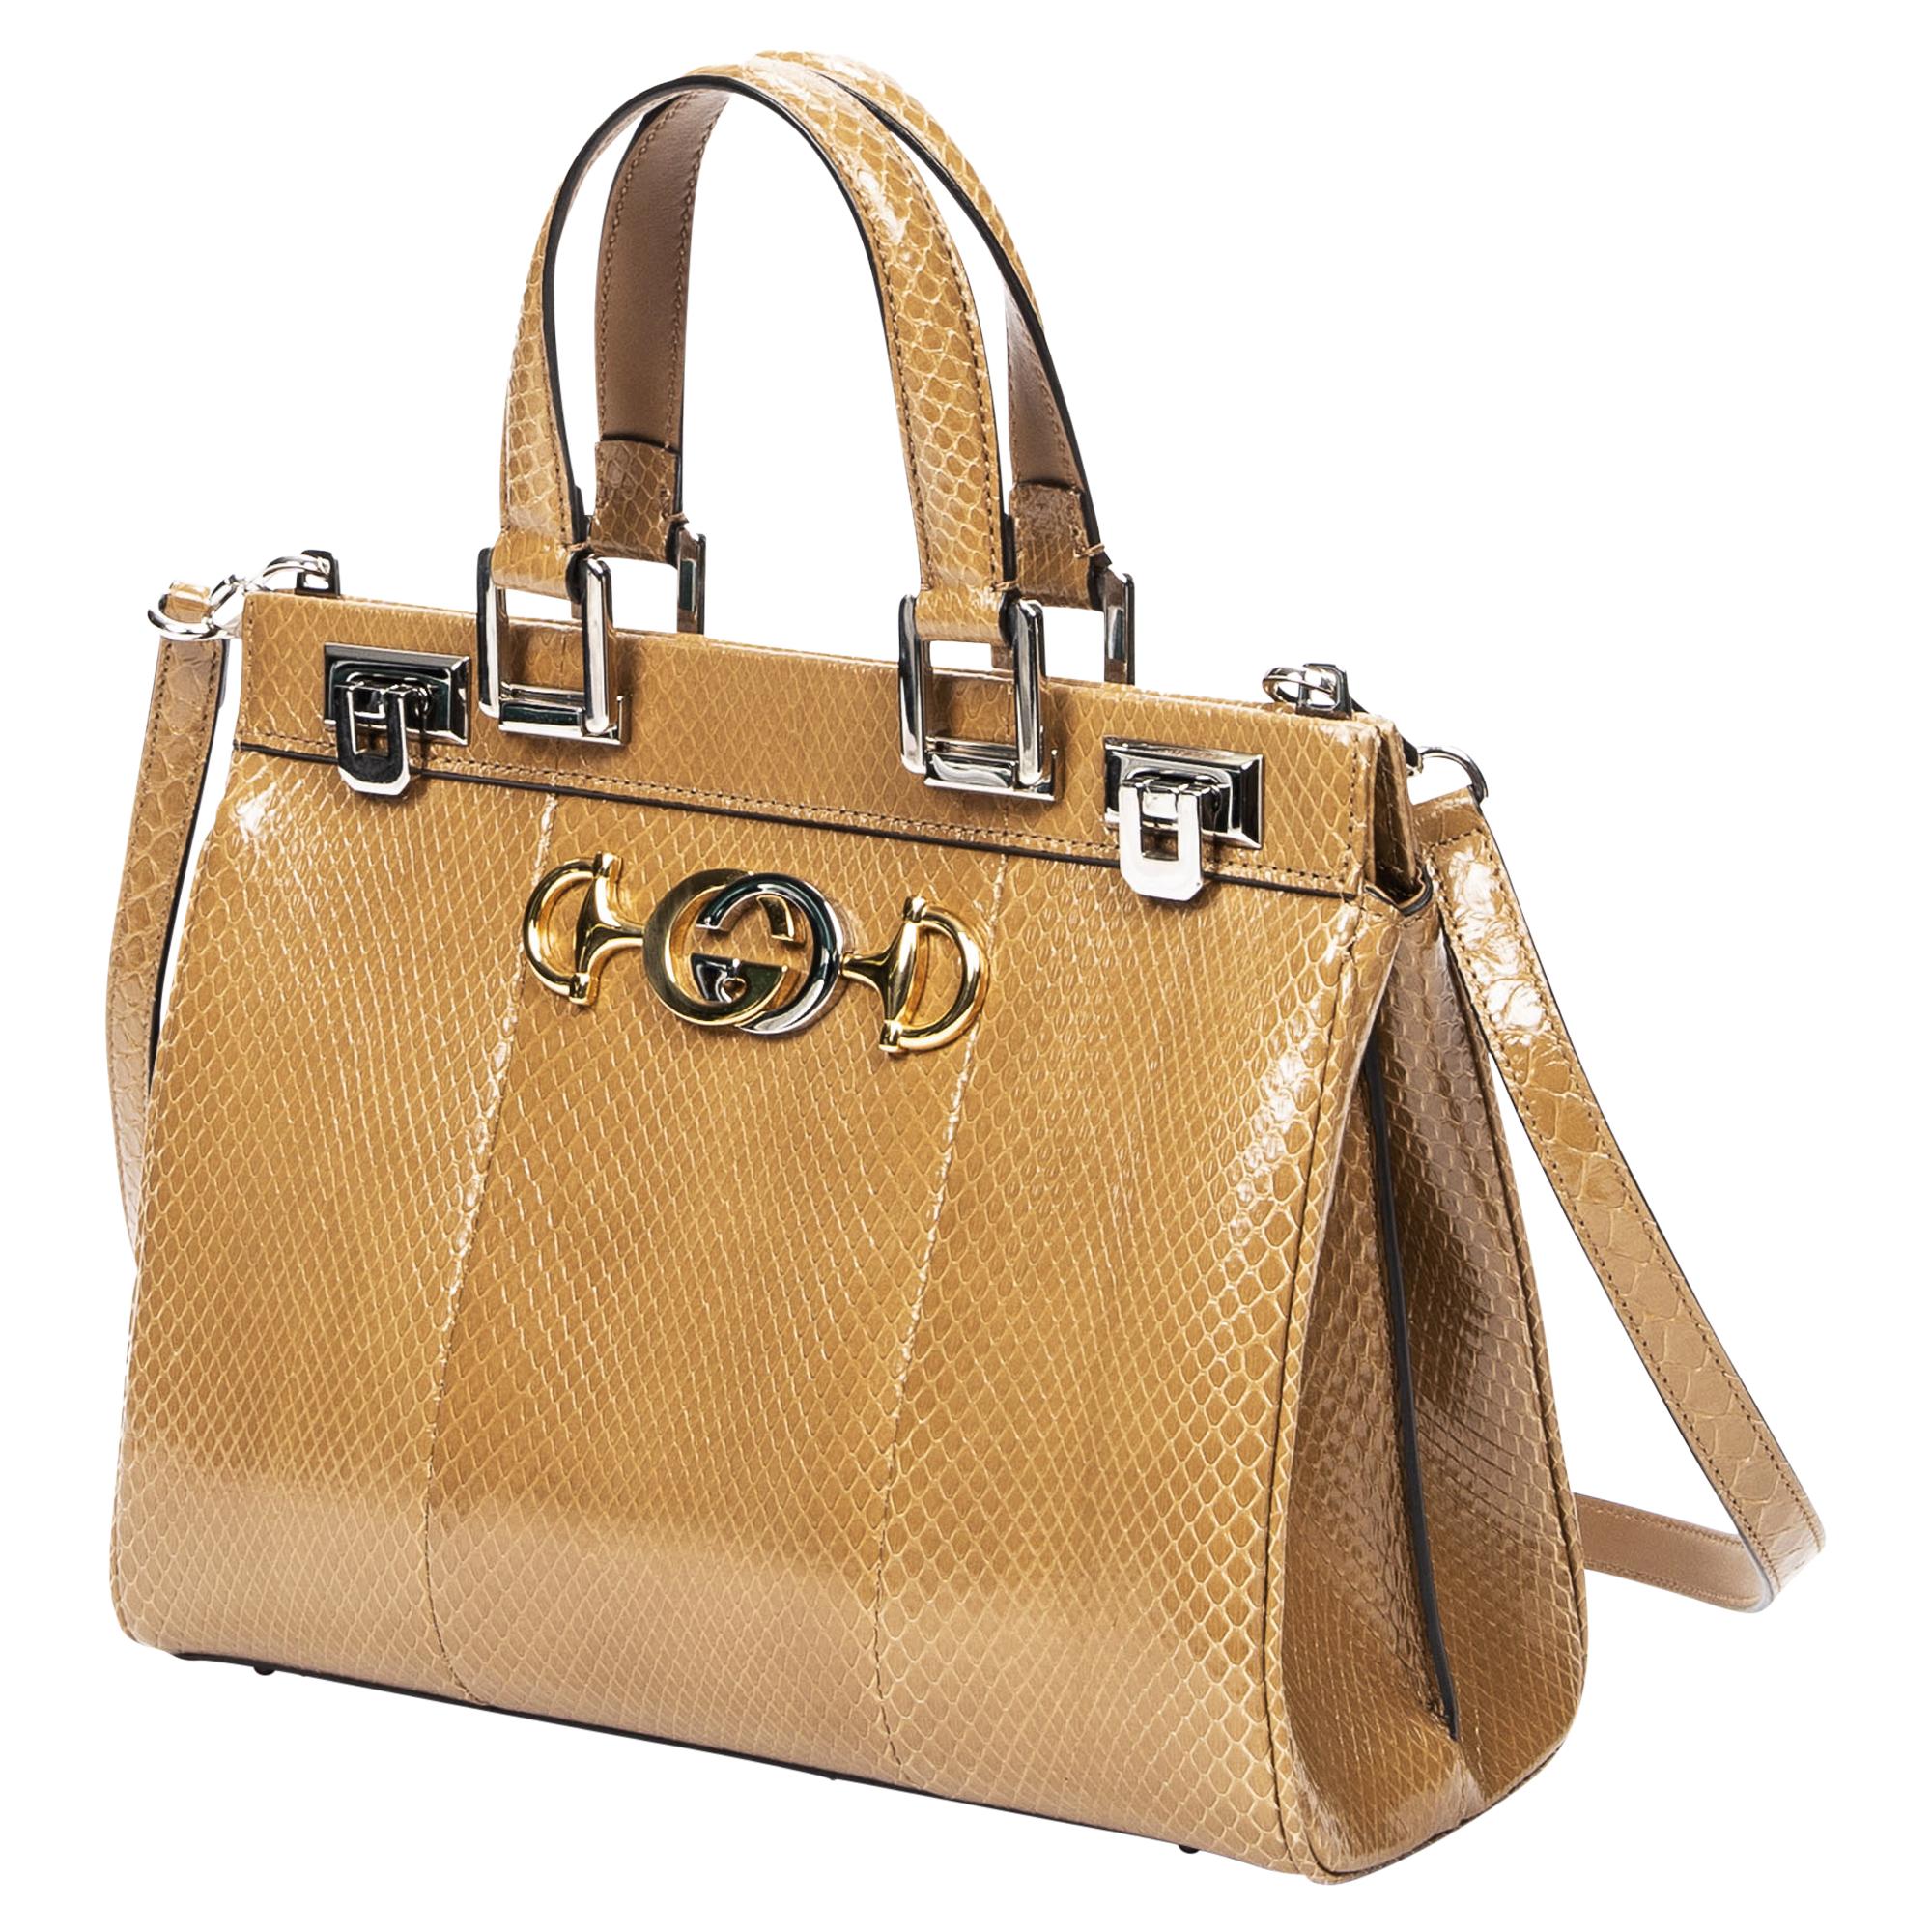 Die Gucci Beige Snakeskin Small Top Handle Bag steht für exotische Eleganz. Aus luxuriösem braunem Schlangenleder in einem vielseitigen Beigeton gefertigt, ist sie ein Statement für die moderne Fashionista. Die Tasche ist mit silbernen Beschlägen